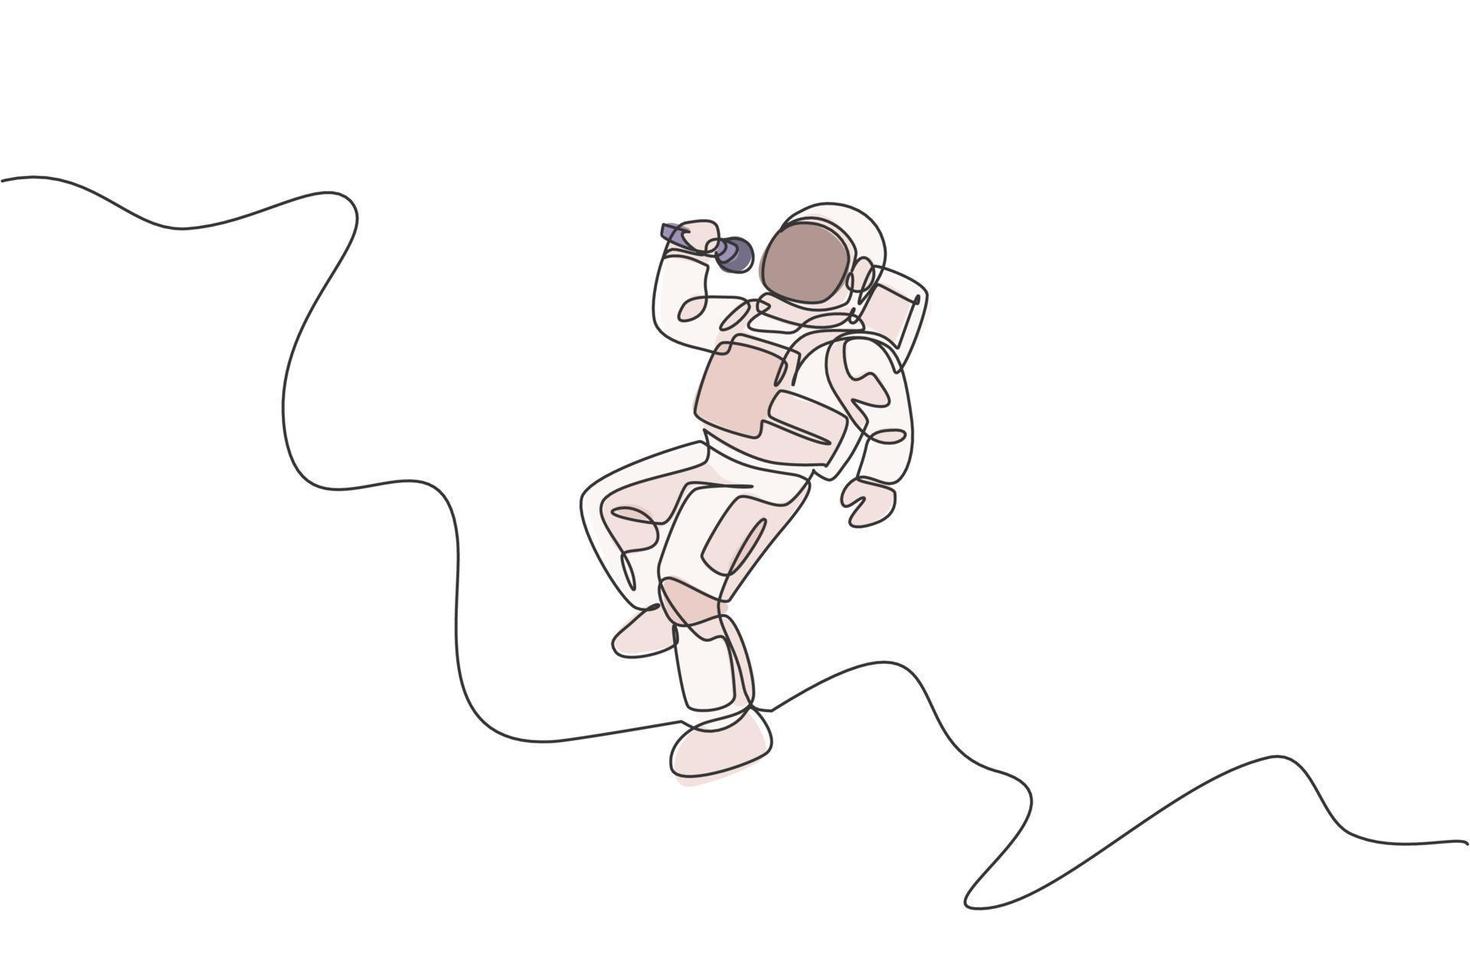 un dibujo de línea continua del cantante astronauta con traje espacial cantando una canción en el universo de la galaxia. Concierto de música del espacio exterior y concepto de orquesta. Ilustración de vector de diseño de dibujo de línea única dinámica